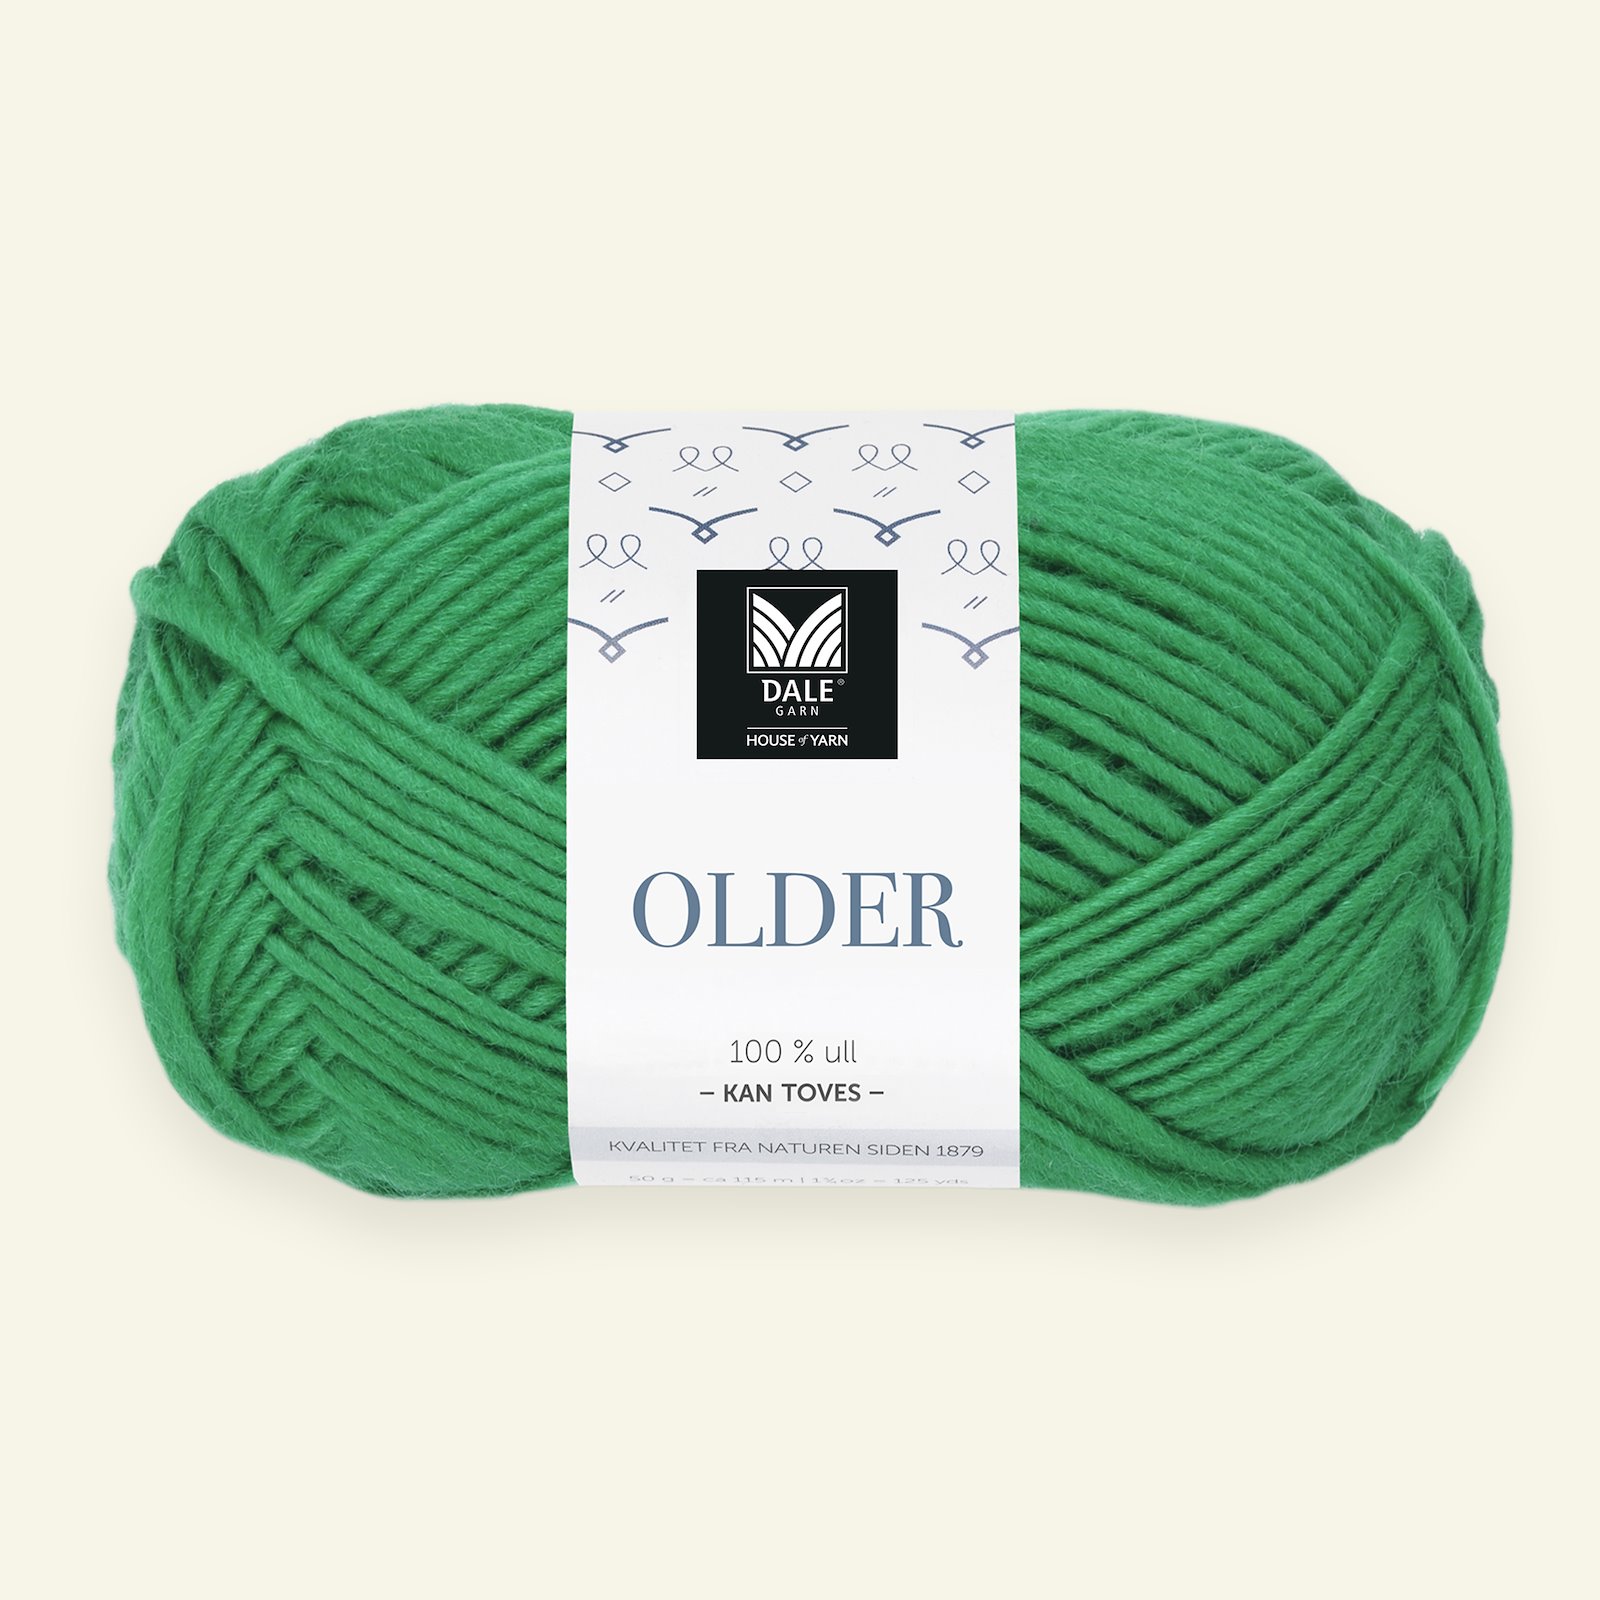 Dale Garn, 100% wool yarn Older, green (411)